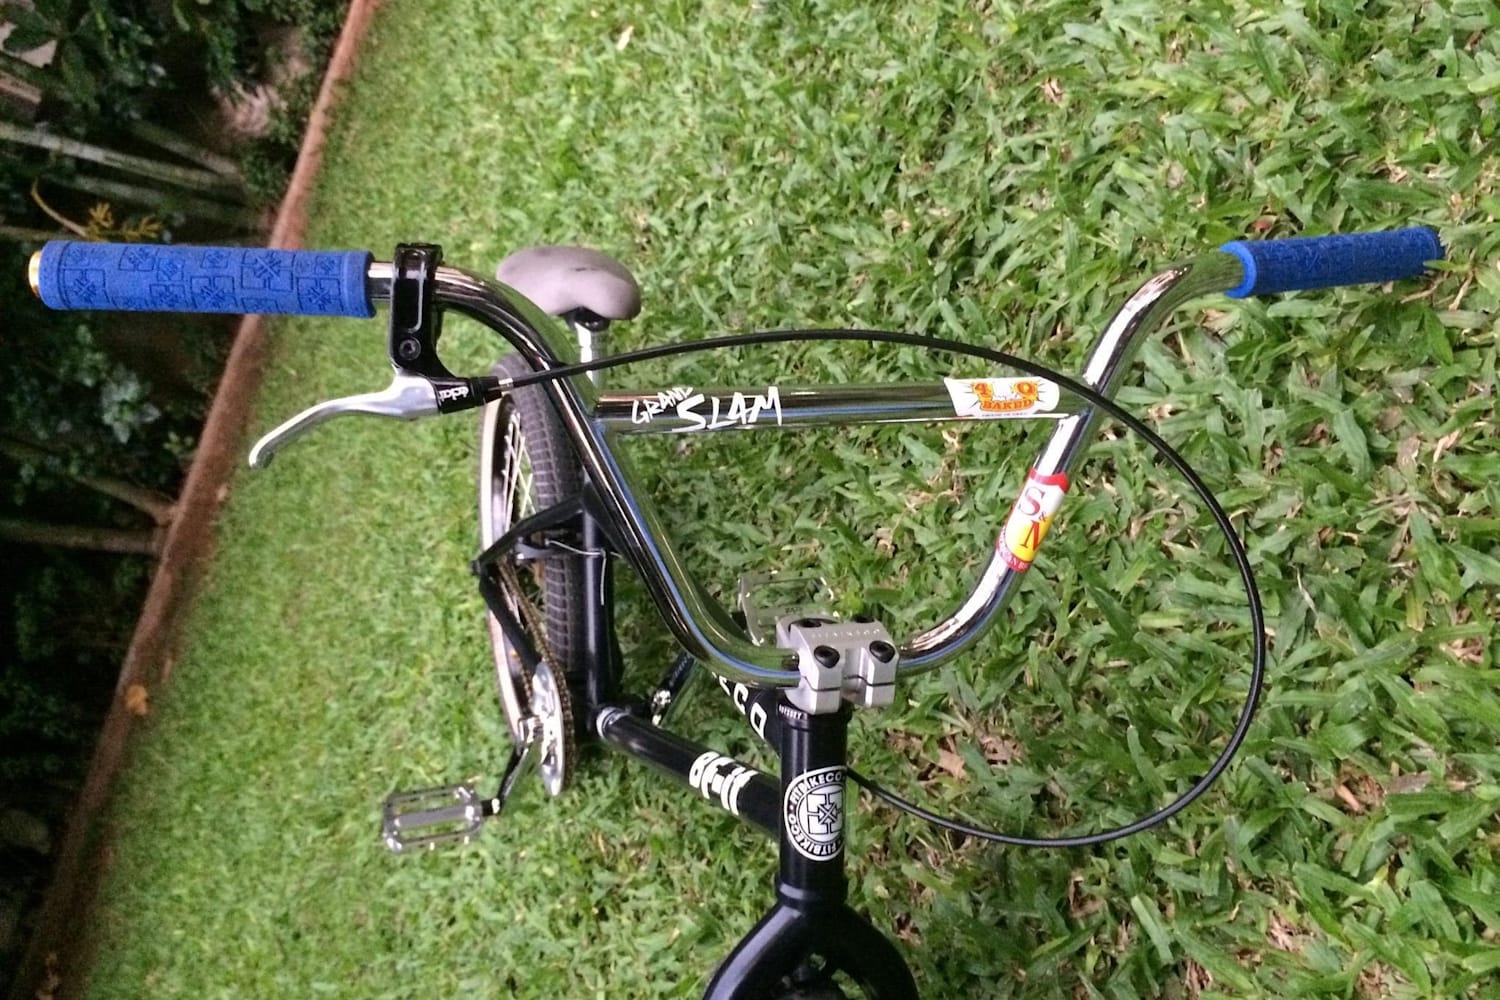 fit bike co stem